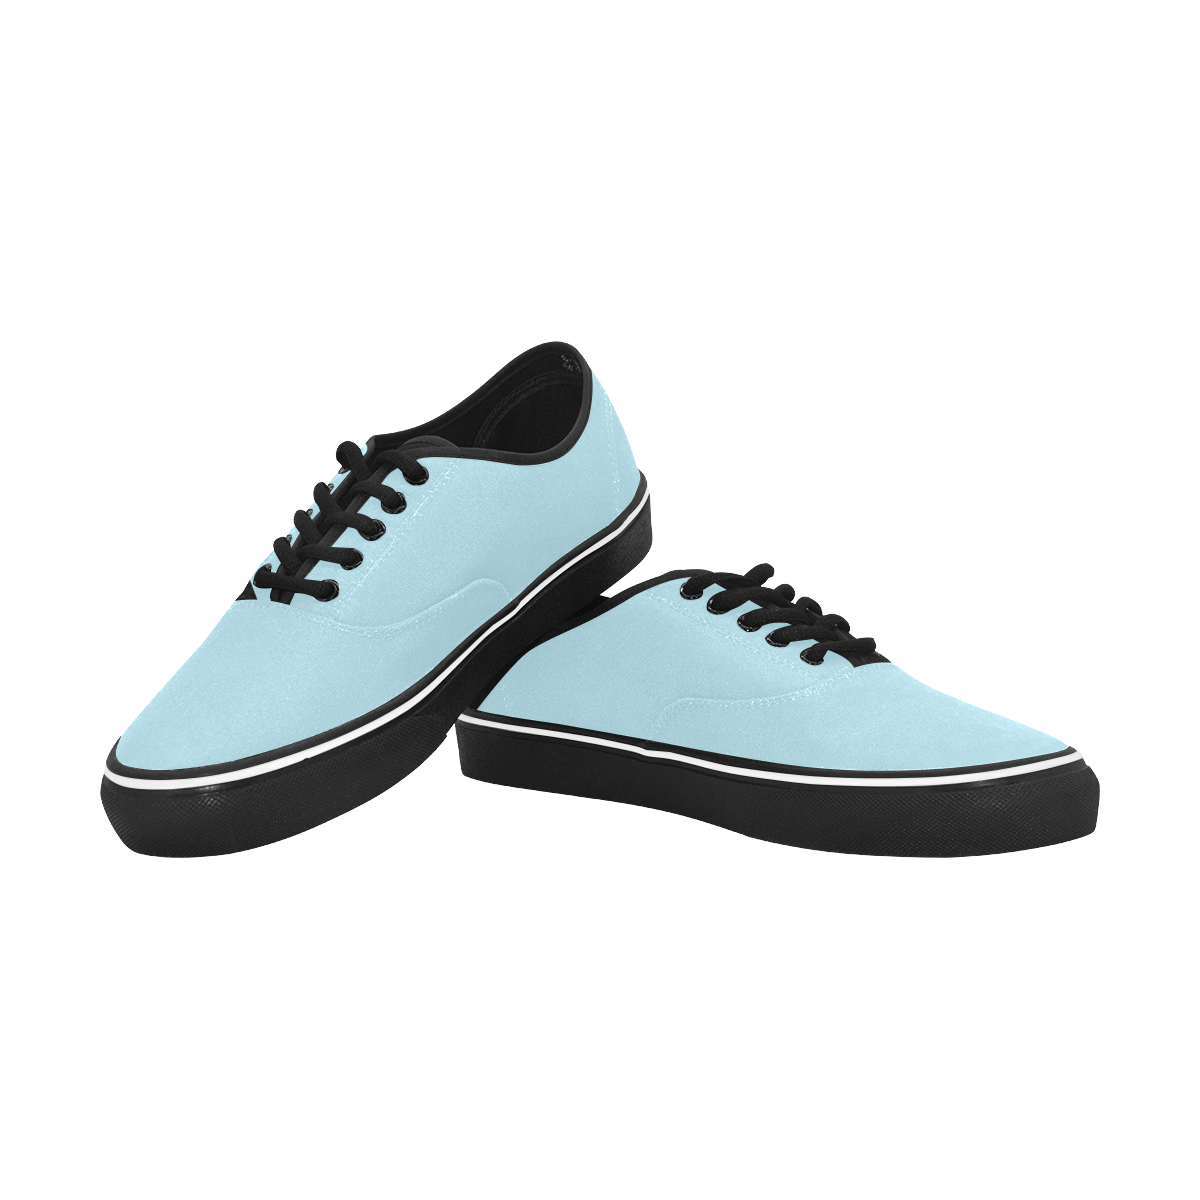 color light blue Classic Men's Canvas Low Top Shoes (Model E001-4)